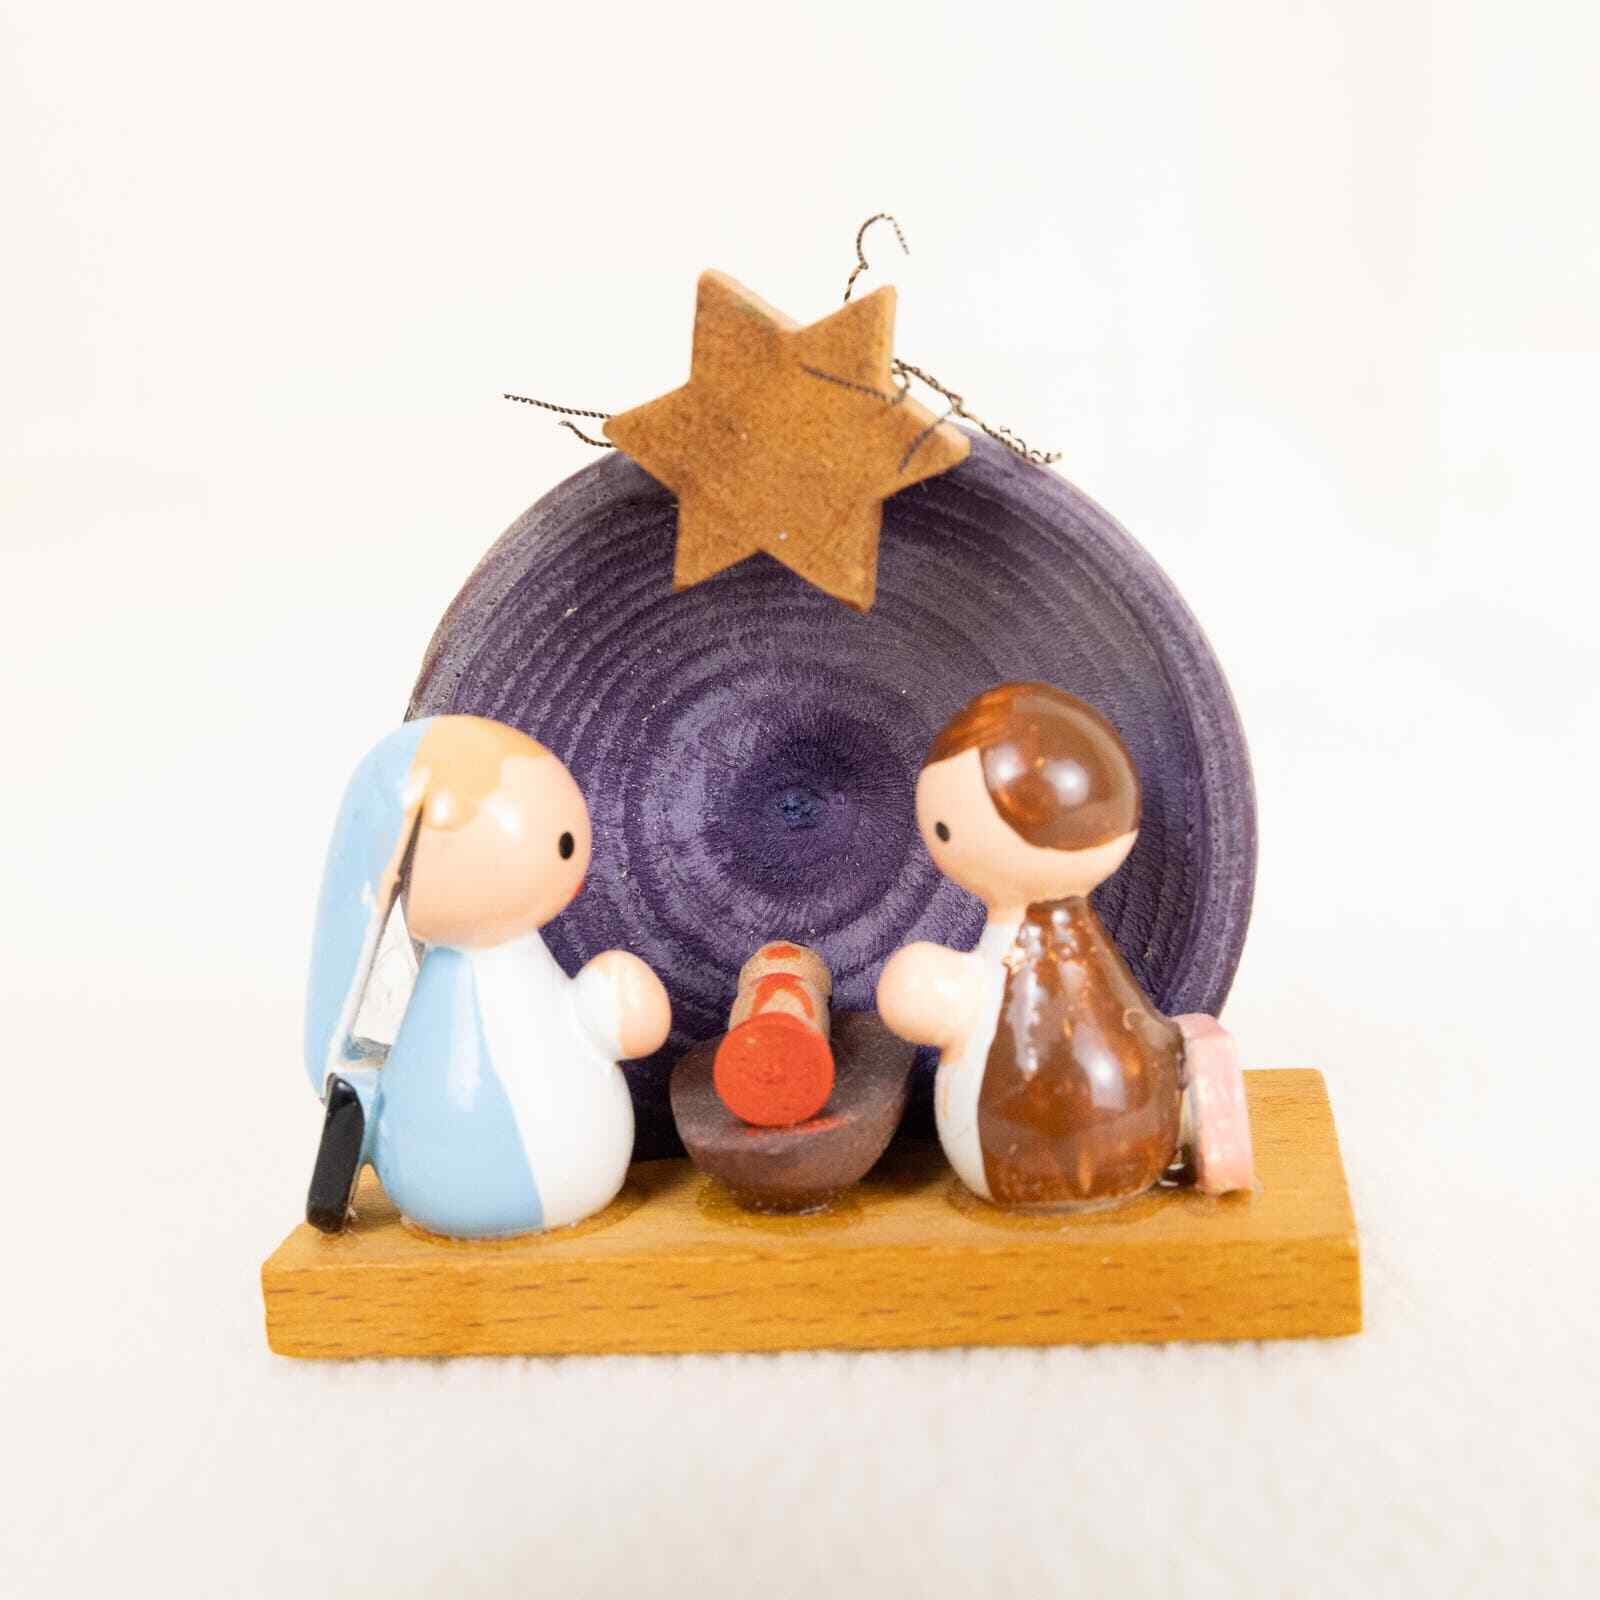 Minature Handpainted Nativity Shell Scene